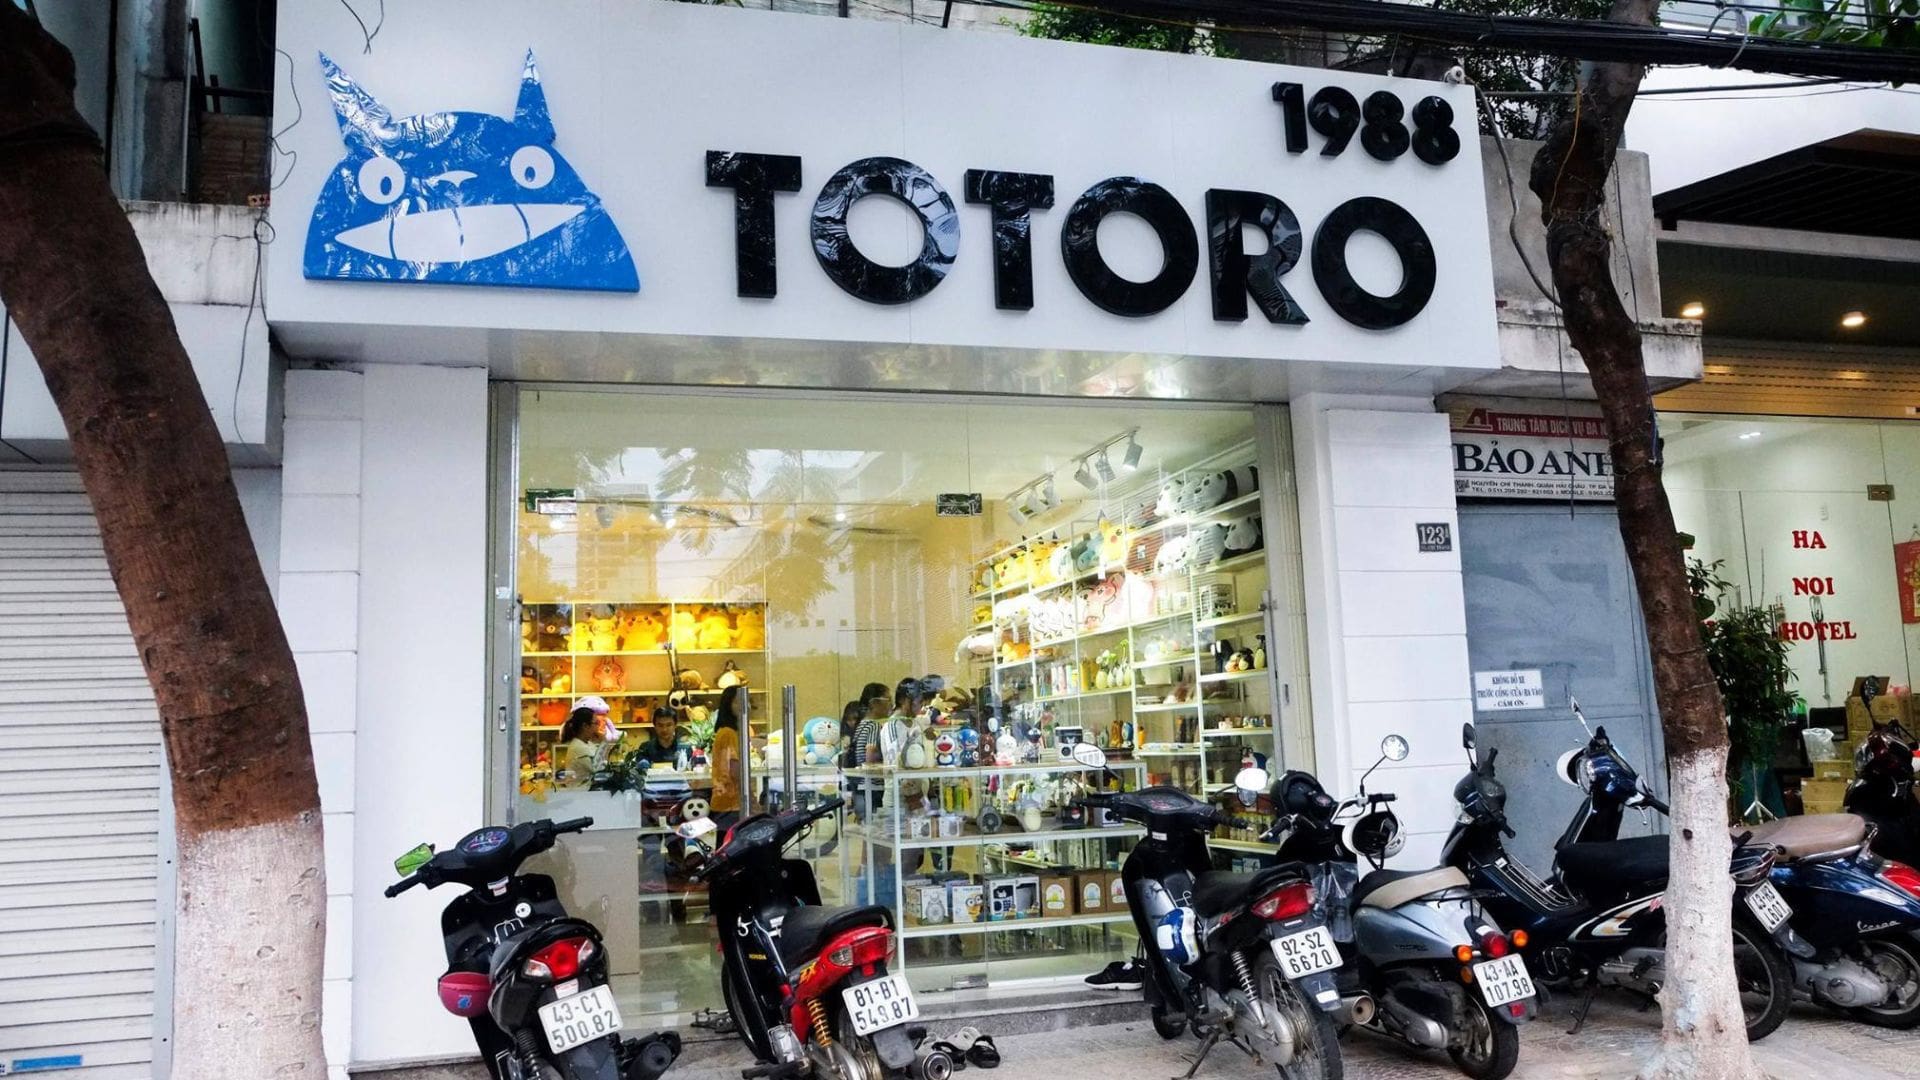 Totoro Đà Nẵng - Địa điểm bán quà lưu niệm Đà Nẵng hàng đầu